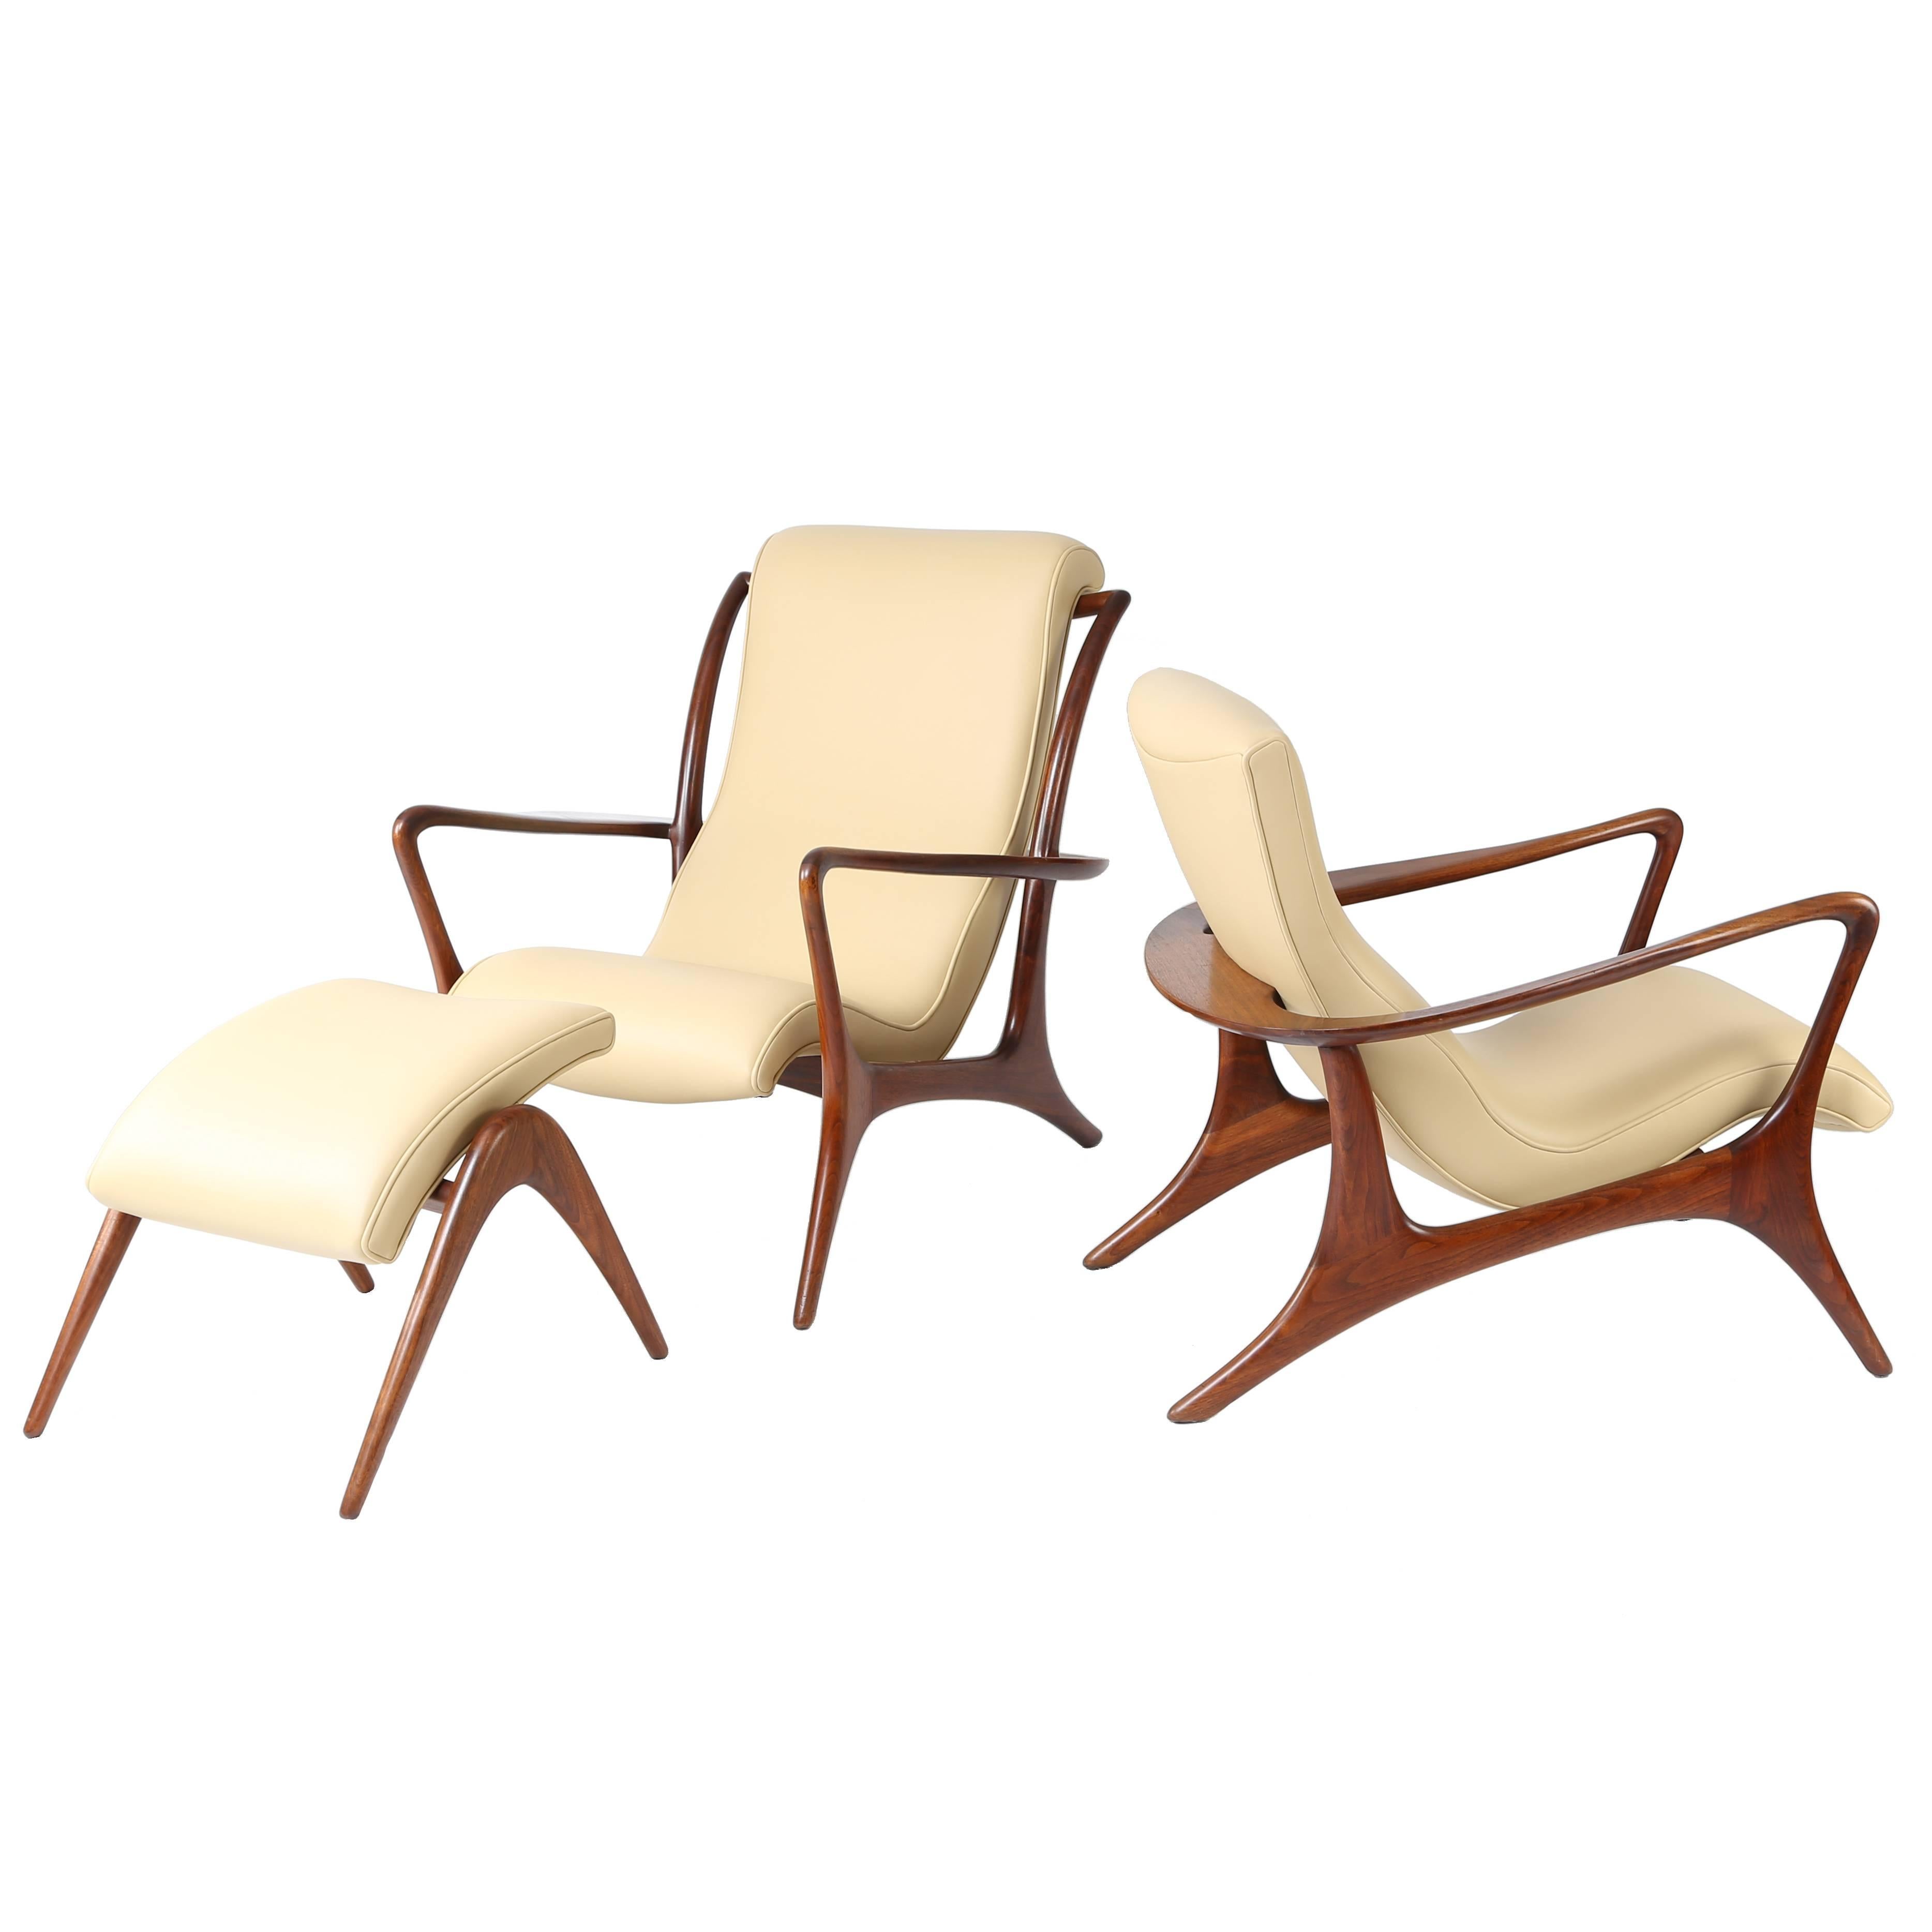 1950s Vladimir Kagan "Contour" Lounge Chairs and Ottoman